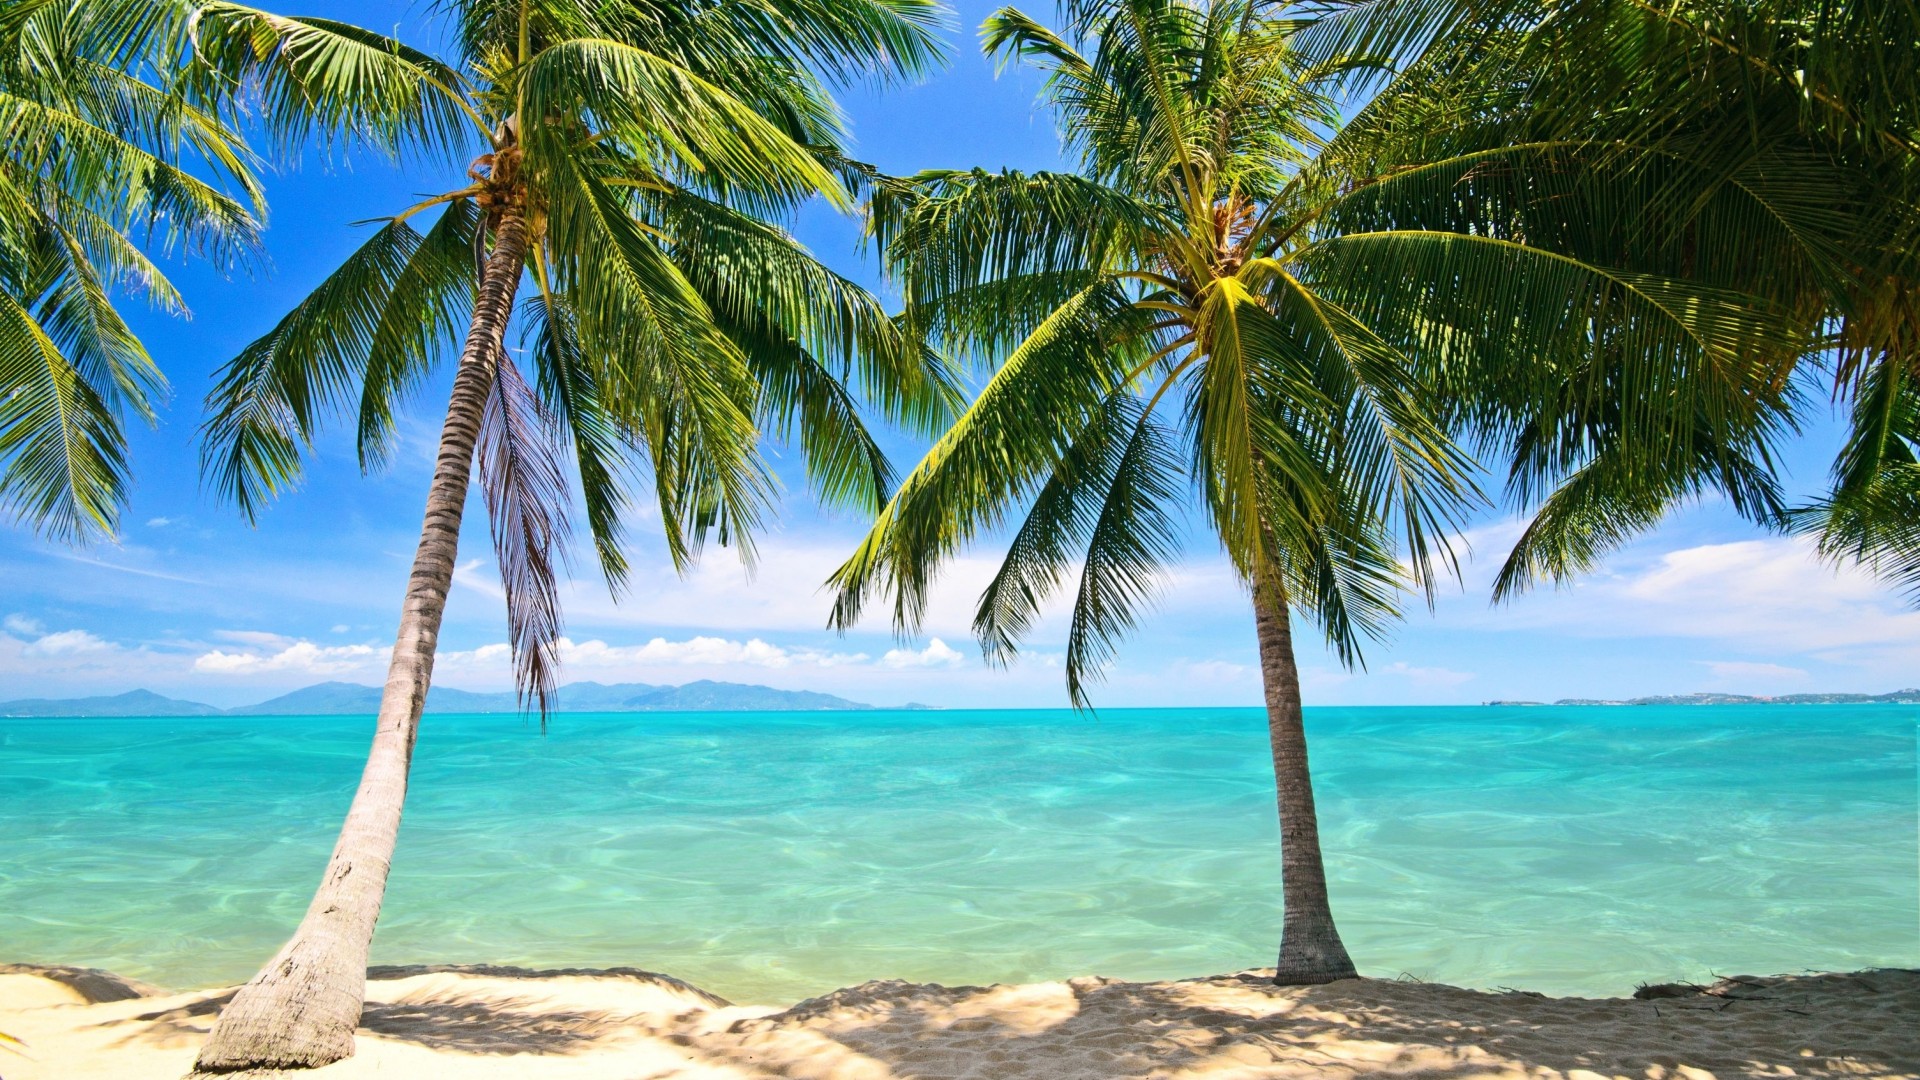 椰子树，棕榈树，沙滩，海洋，天空，夏天风景桌面壁纸